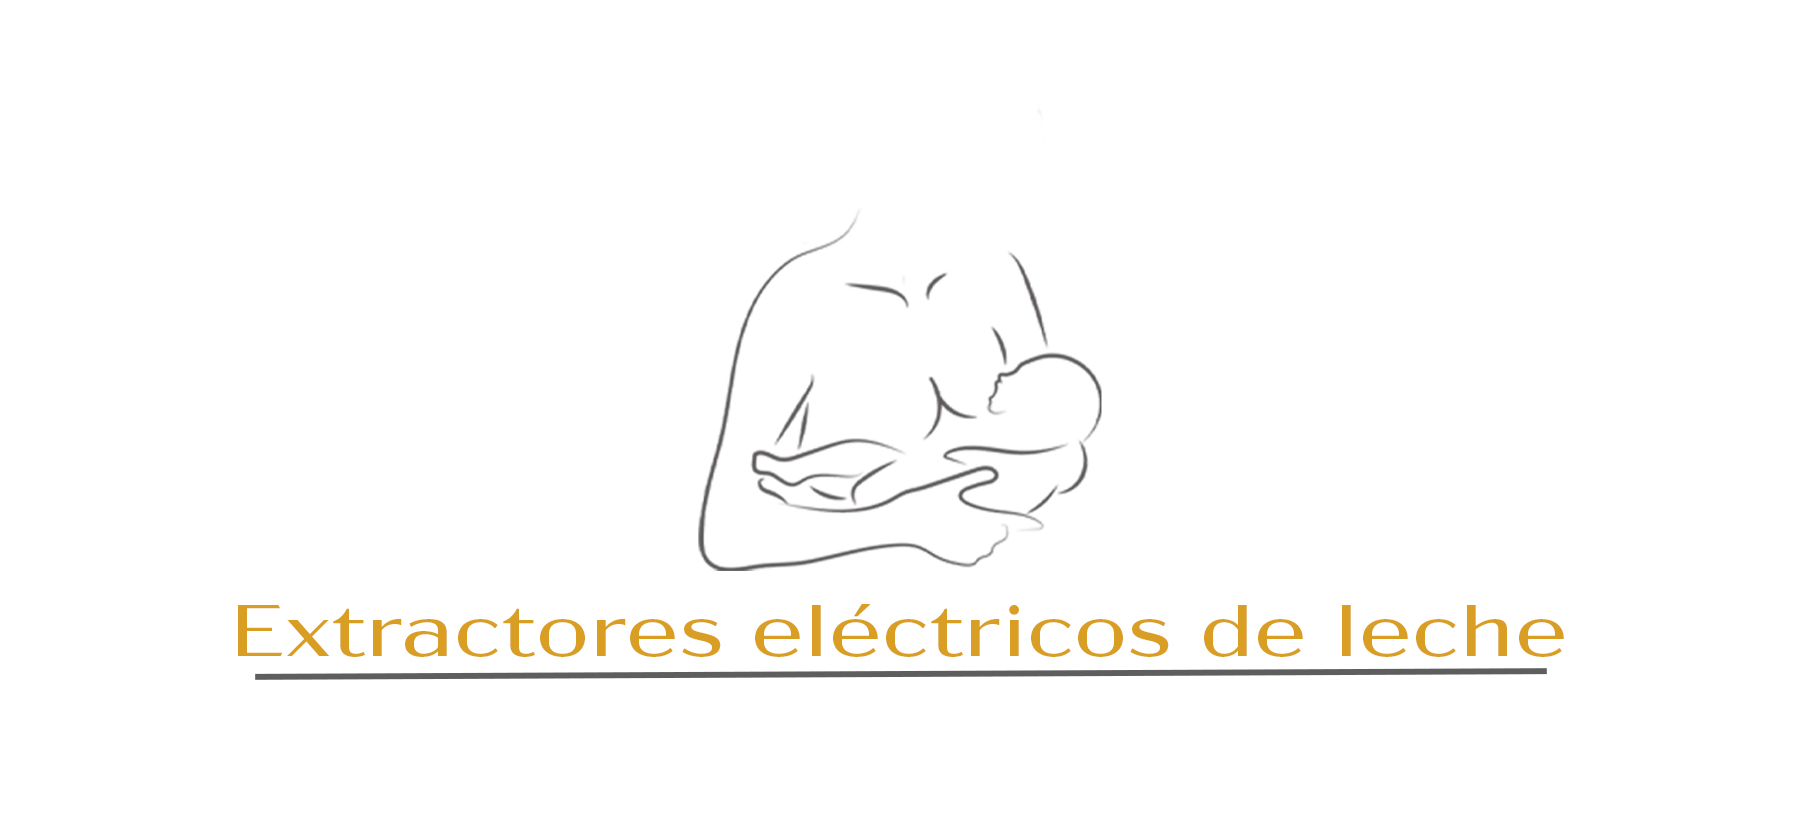 Extractores Electricos de Leche